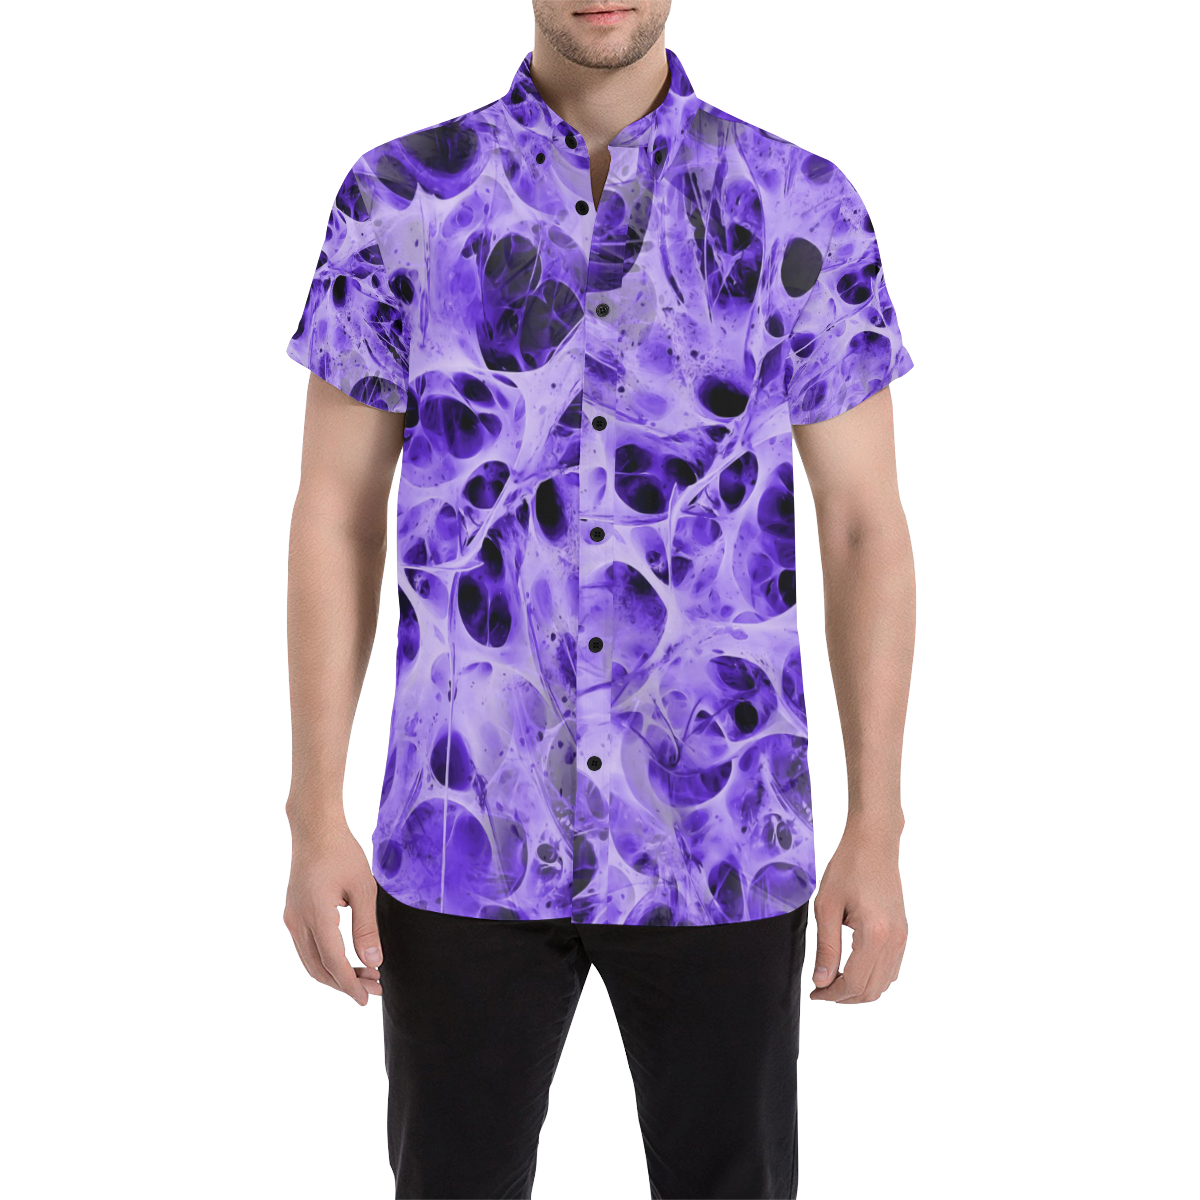 SPIDER WEB fractal - violet black Men's All Over Print Short Sleeve Shirt (Model T53)